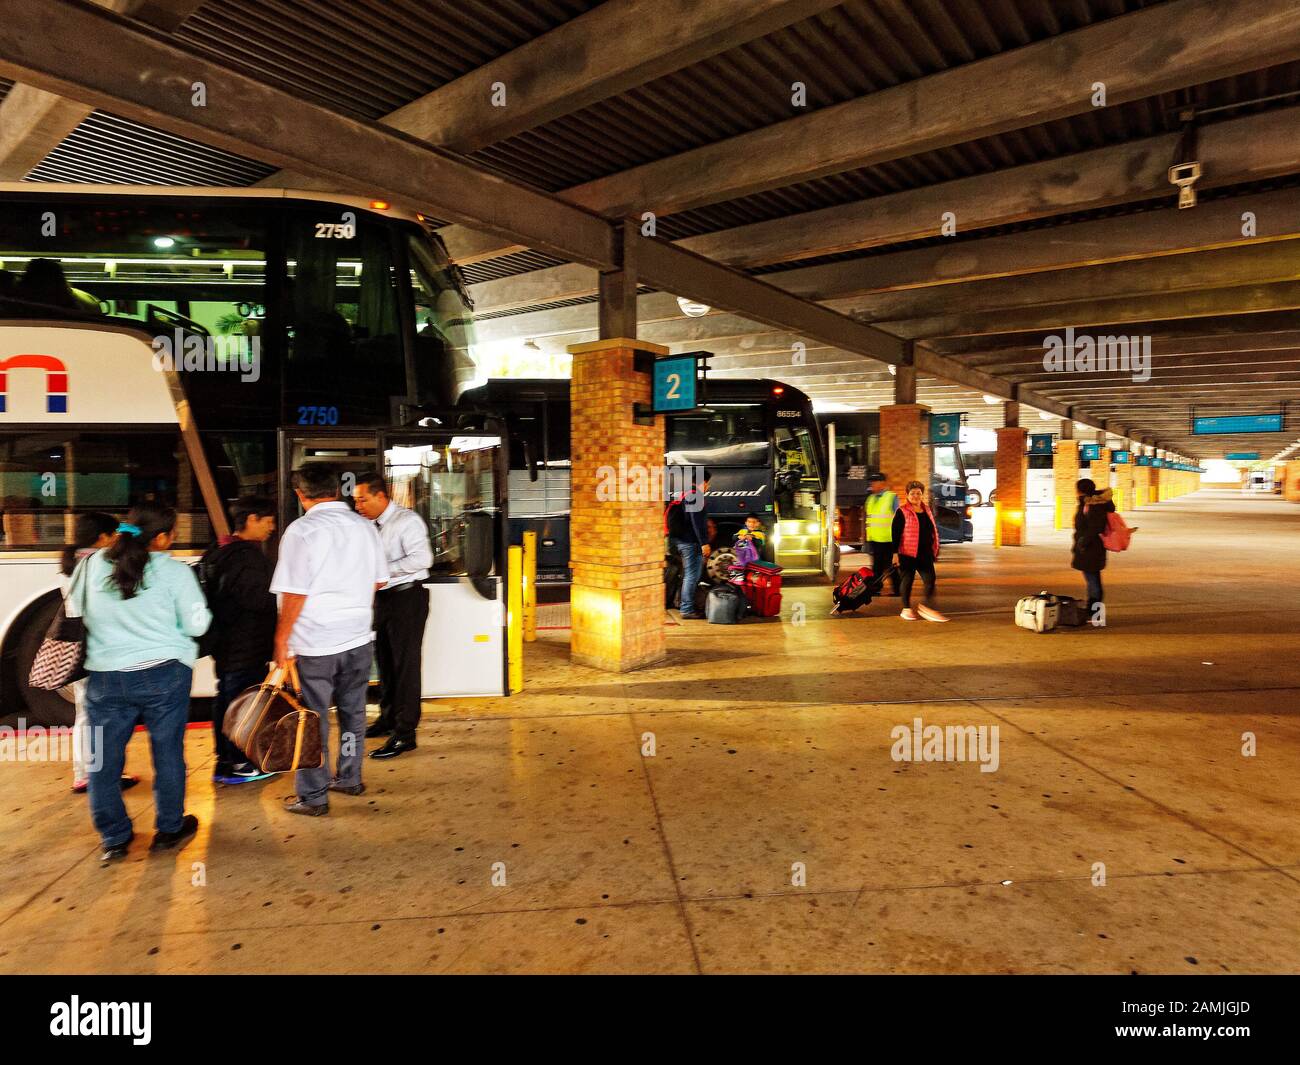 Persone a bordo degli autobus al terminal degli autobus la Plaza a Brownsville, Texas. Al confine tra Messico e Stati Uniti. L'autobus è un modo economico per viaggiare per le famiglie. Foto Stock